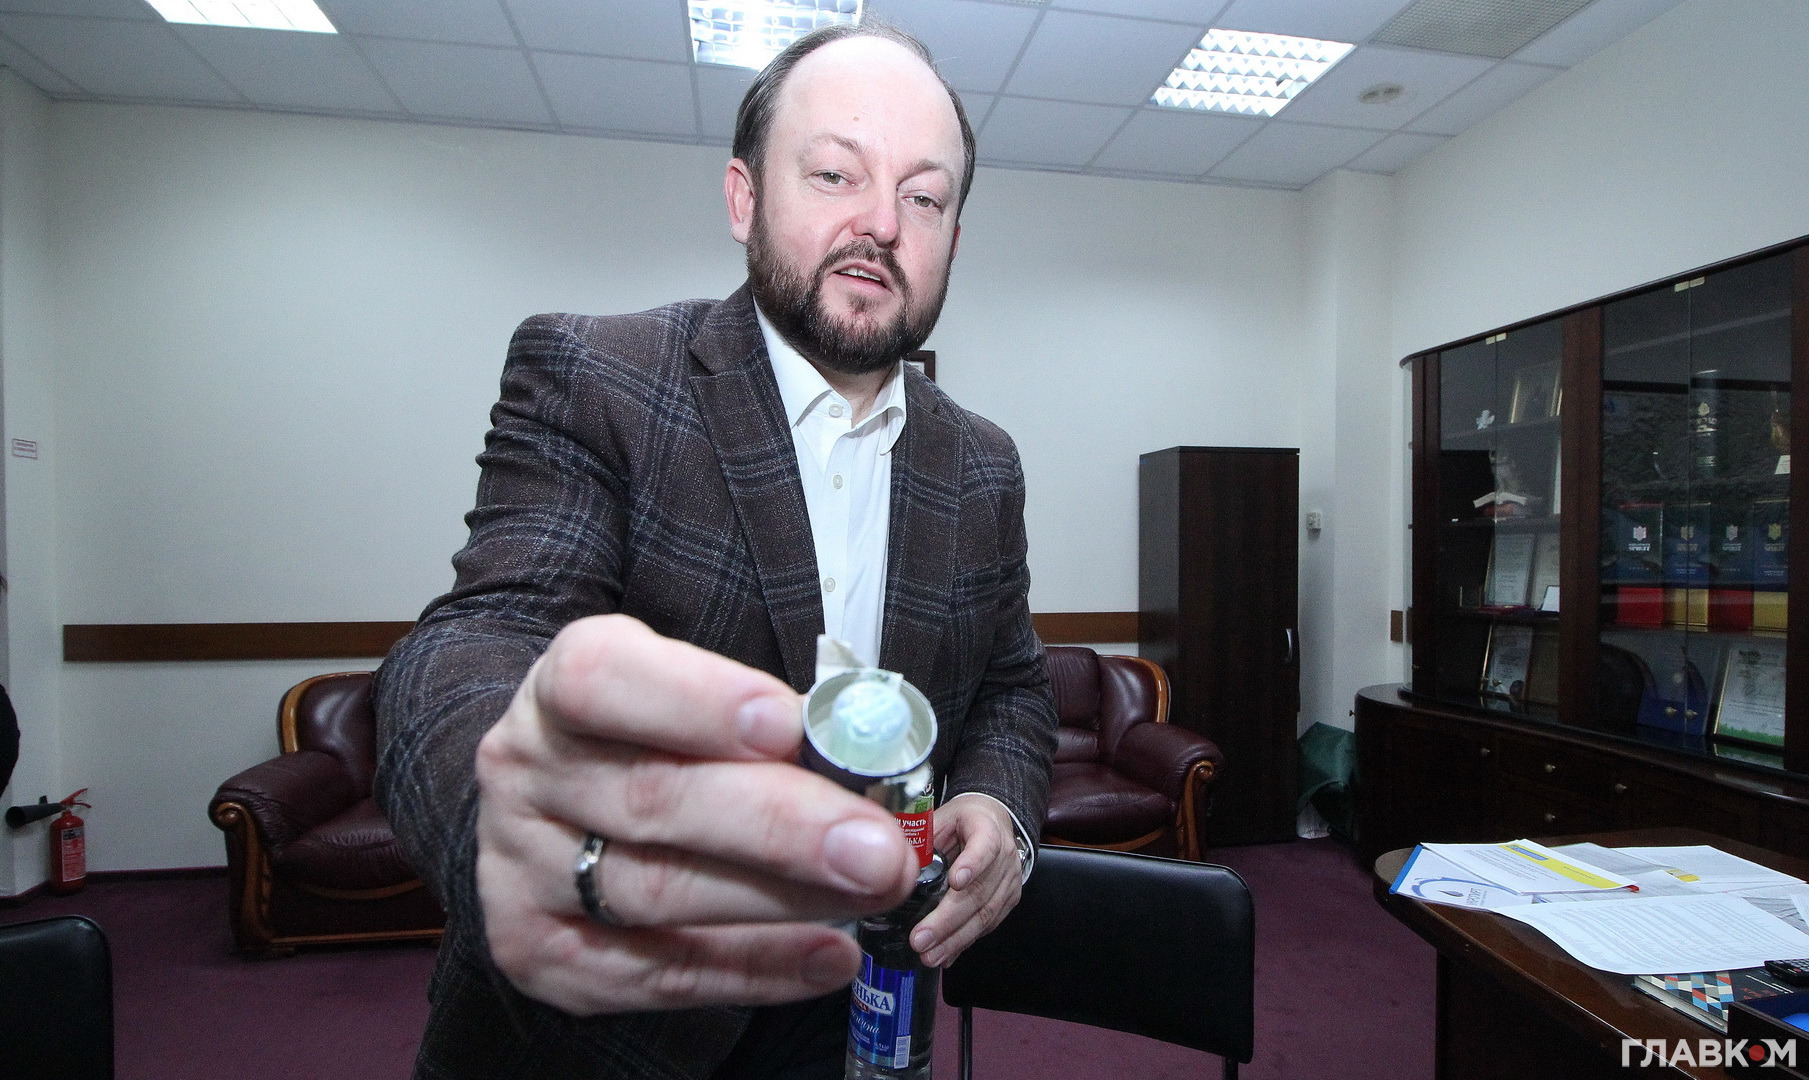 Керівник «Укрспирту» Сергій Блескун демонструє, на які йдуть виробники горілки. Під кришку від склянки з горілкою вкладено 20-гривневу купюру